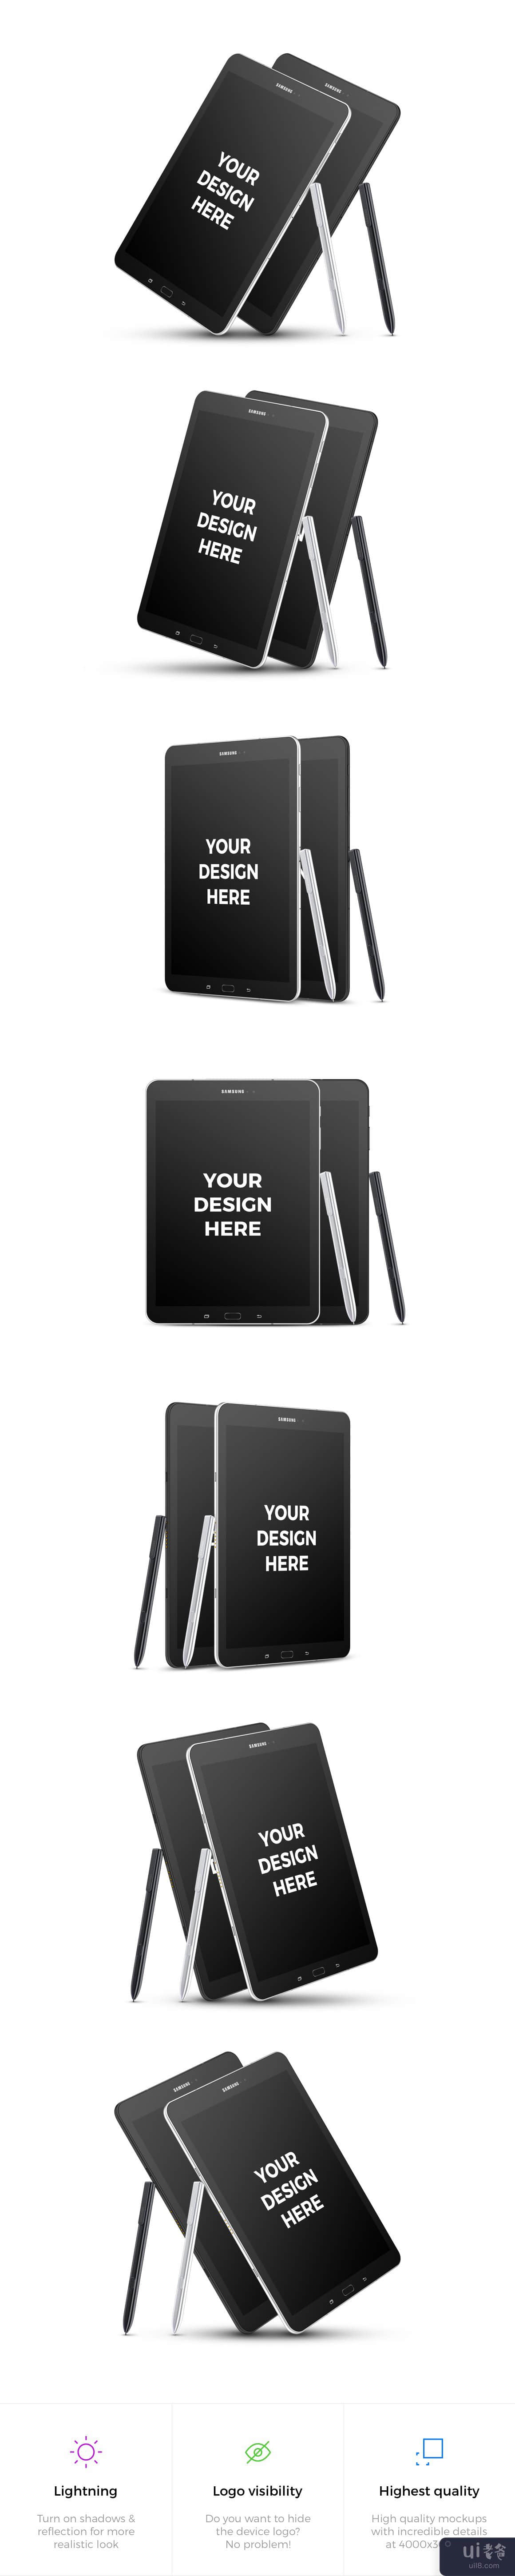 14x 三星 Galaxy Tab S3 样机(14x Samsung Galaxy Tab S3 Mockups)插图